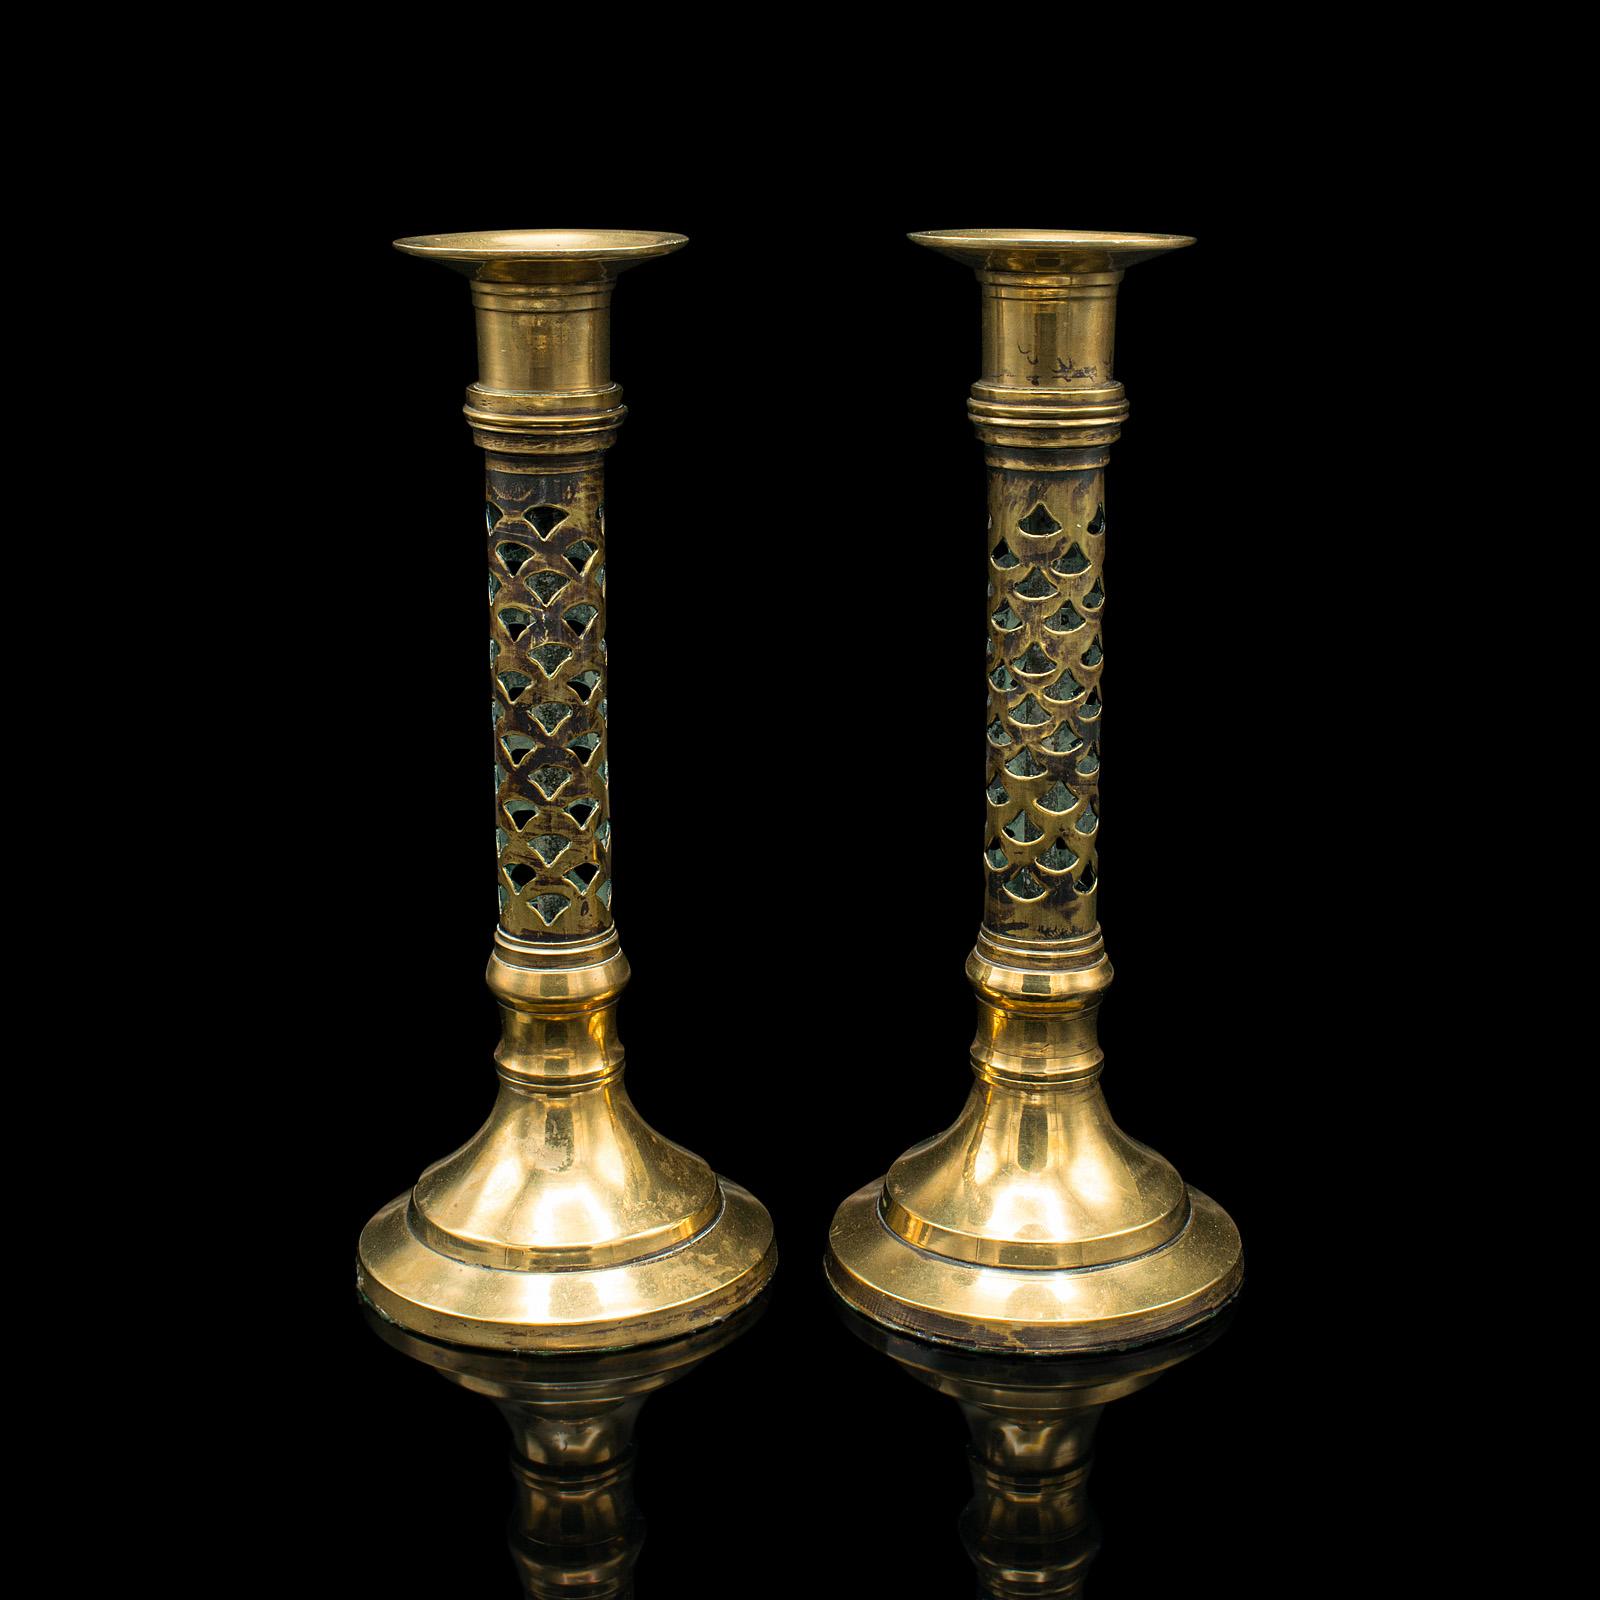 Dies ist ein Paar antiker kirchlicher Leuchter. Ein englischer, durchbrochener Messing-Kerzenhalter im ästhetischen Zeitgeschmack, aus der viktorianischen Zeit, um 1890.

Edle Kerzenständer mit elegantem Aussehen
Mit wünschenswerter Alterspatina in